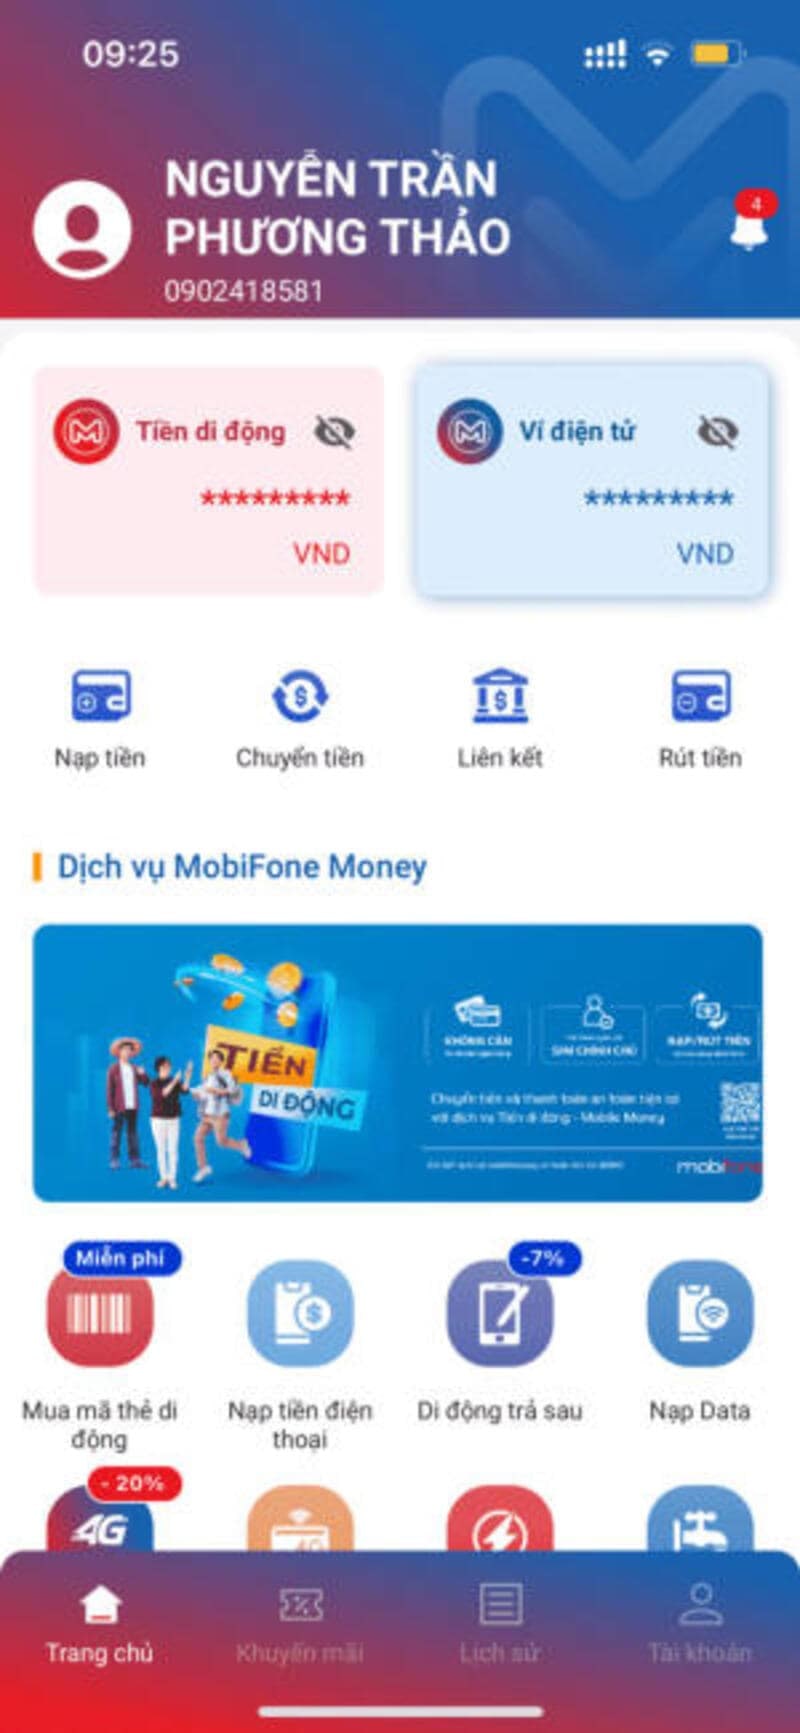 liên kết thẻ ngân hàng với MobiFone Money